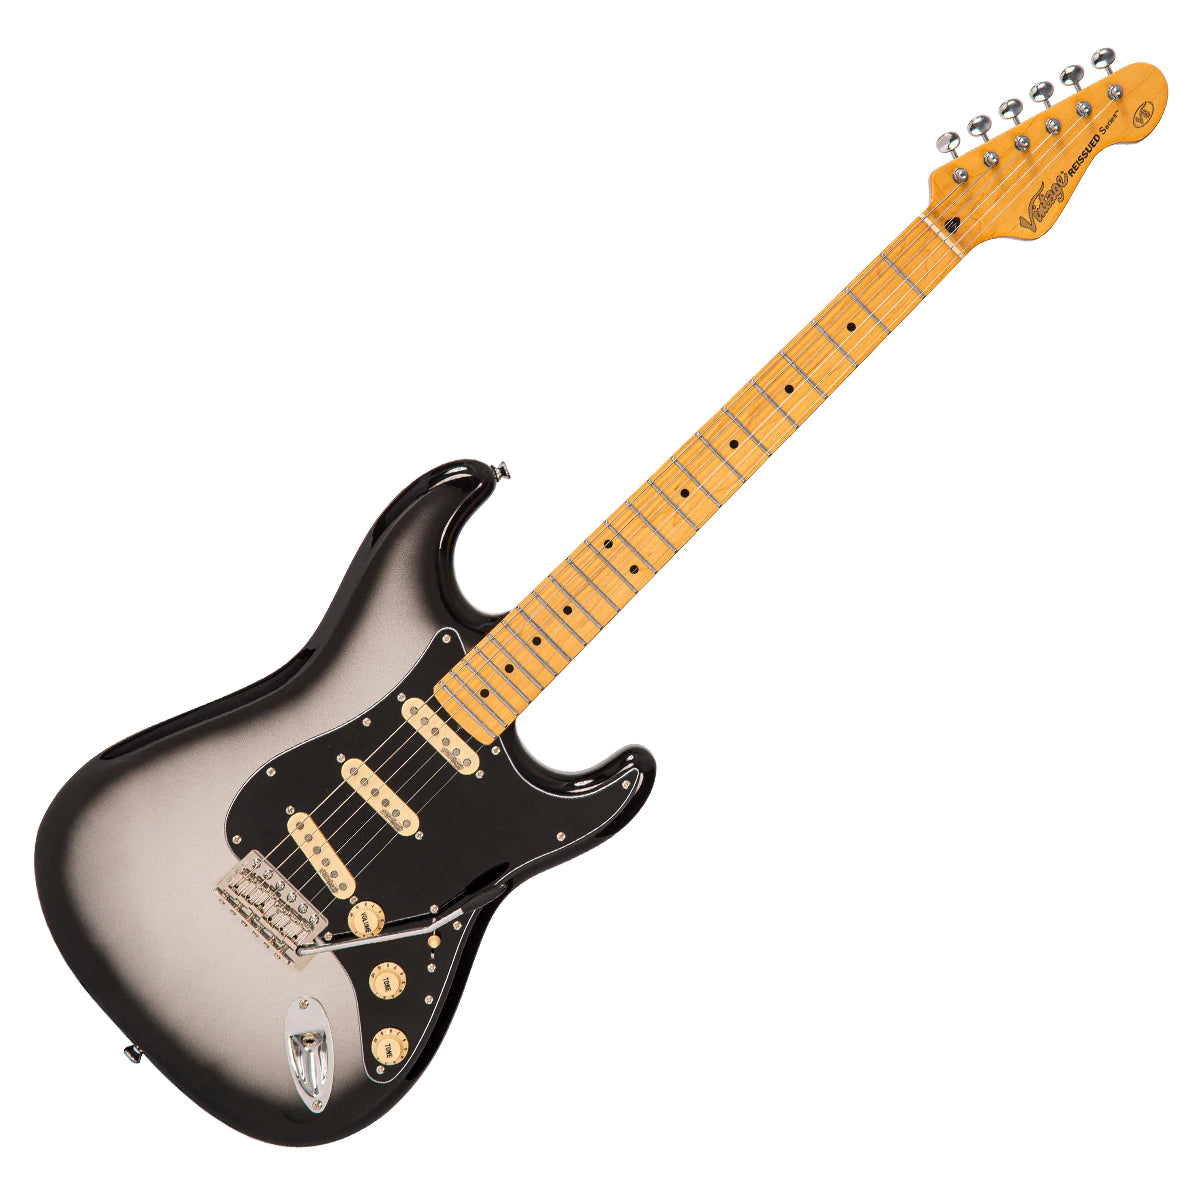 Vintage V6 ReIssued Electric Guitar ~ Silverburst, Electric Guitar for sale at Richards Guitars.